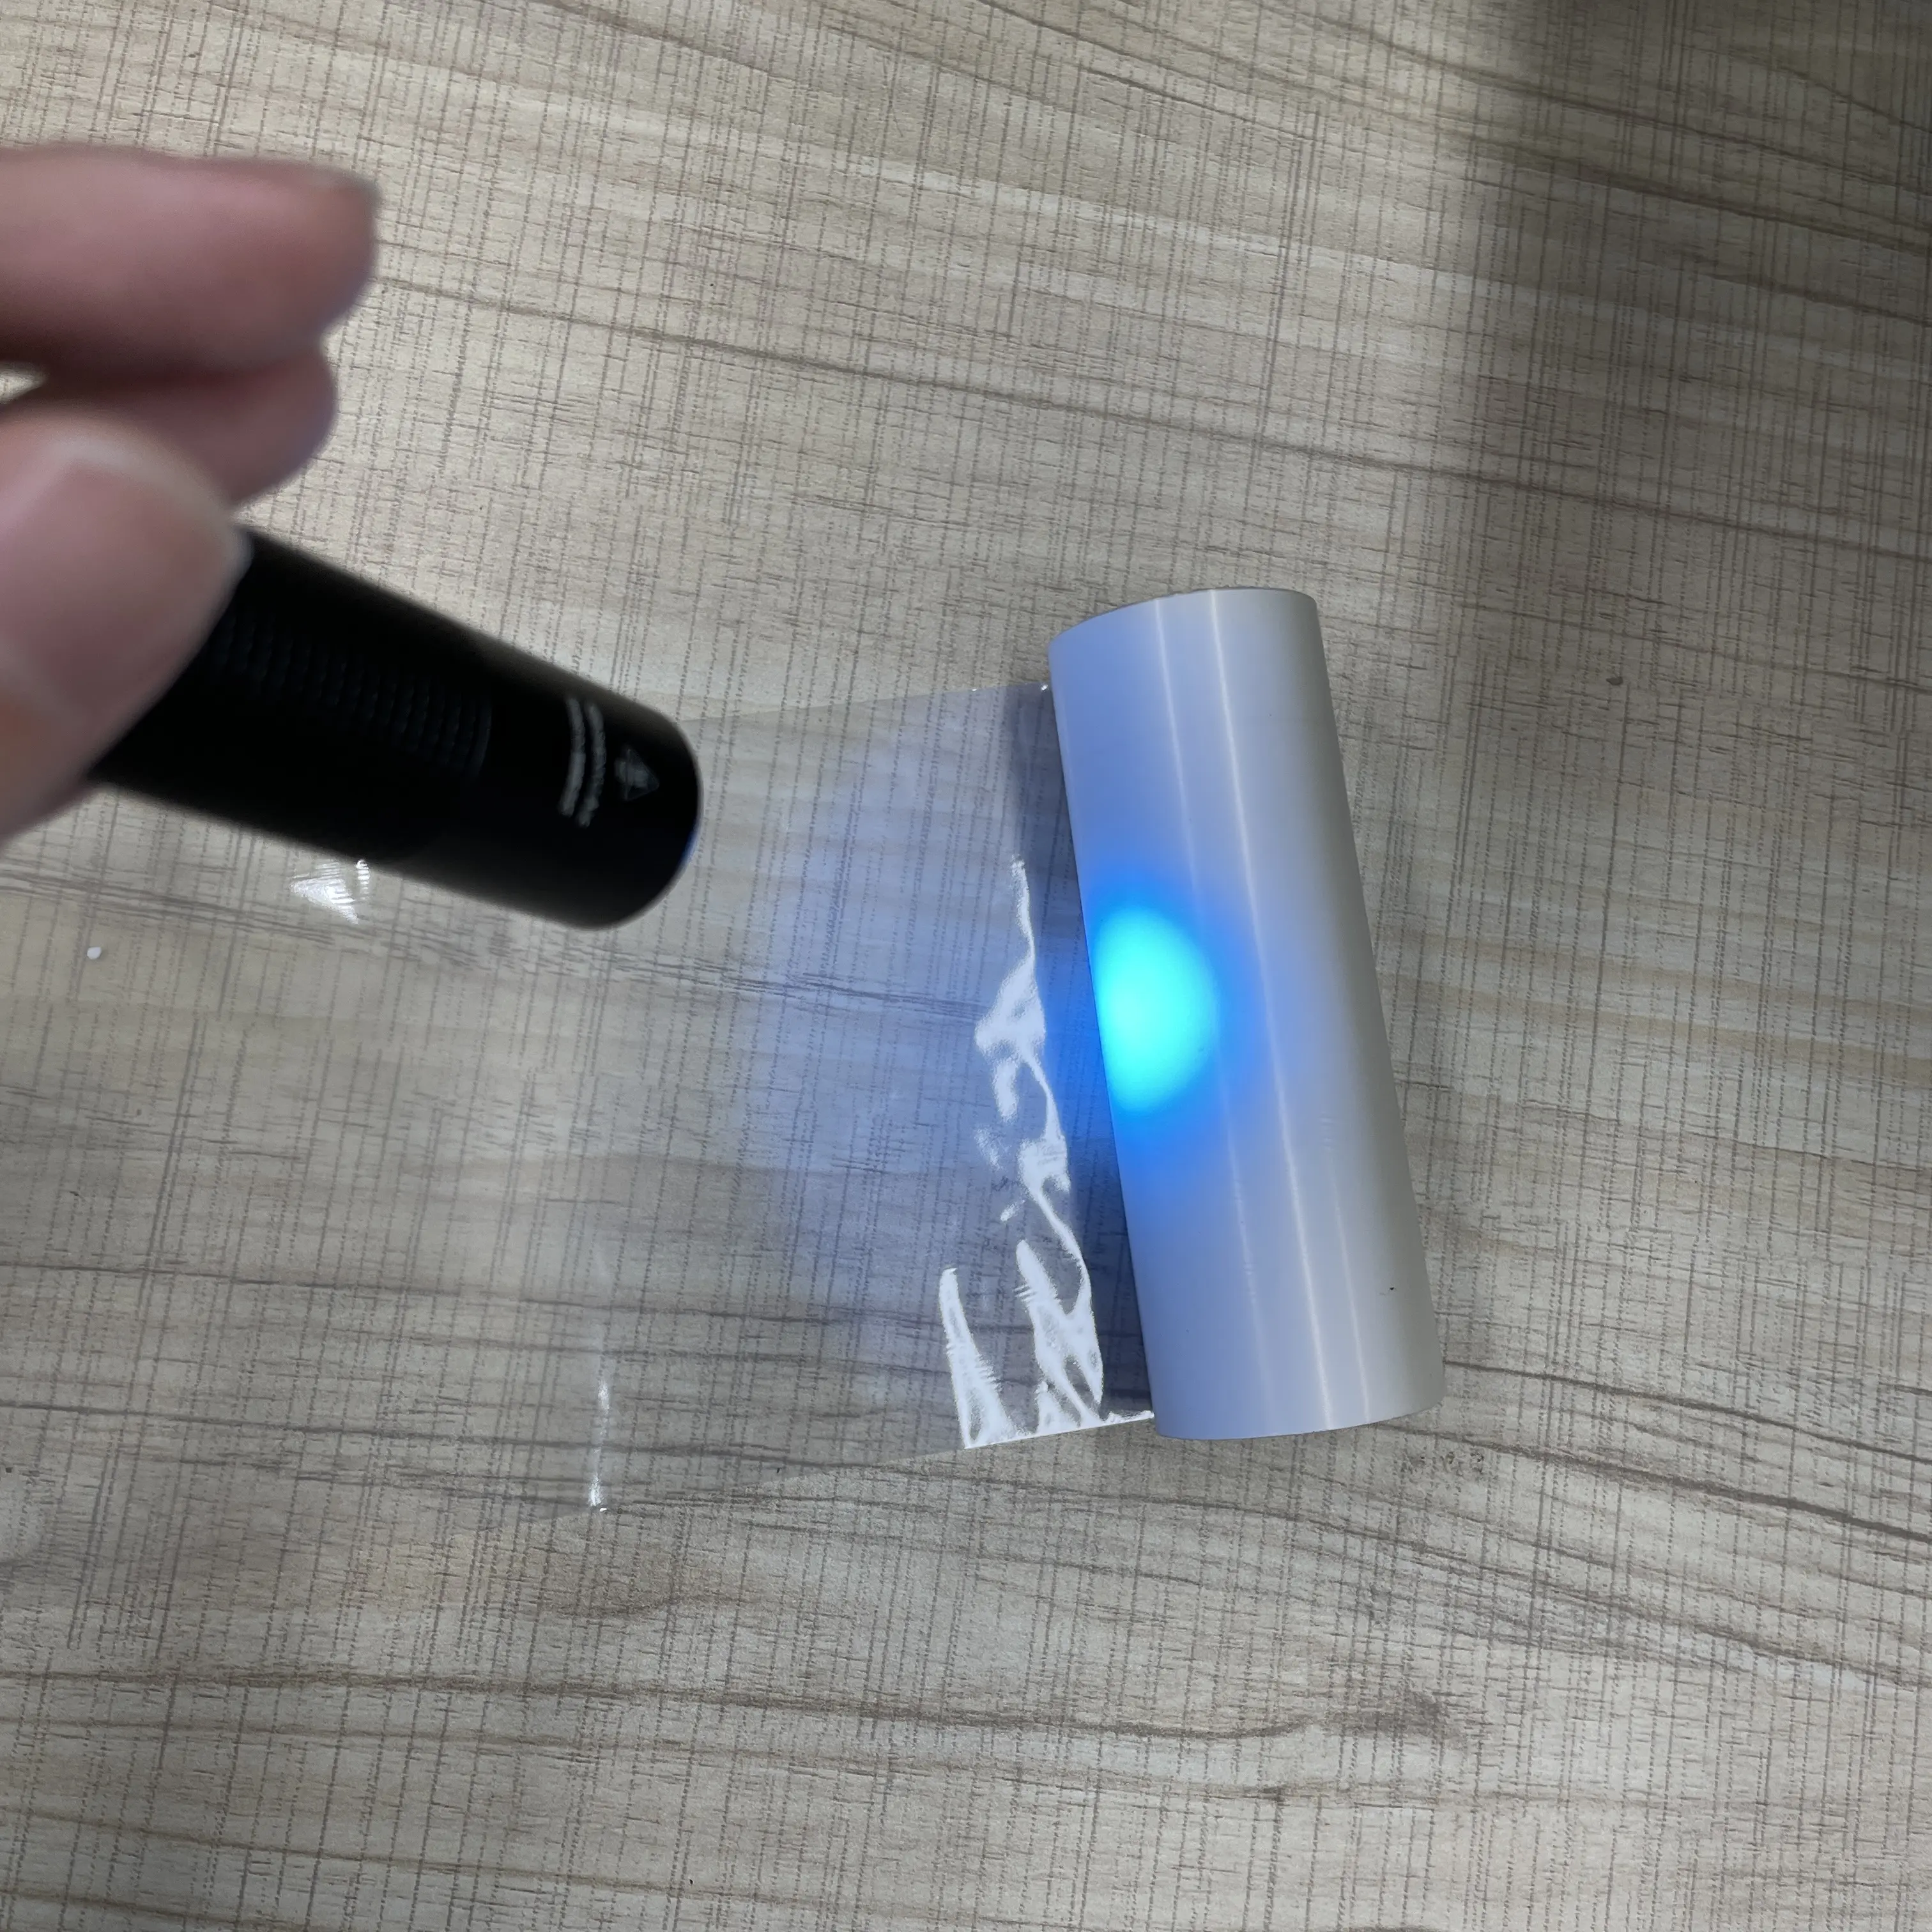 المنتج الفريد طابعة الباركود تستخدم الضوء UV للحماية استخدام اناتيك شفاف الحرارية نقل الشريط الراتنج